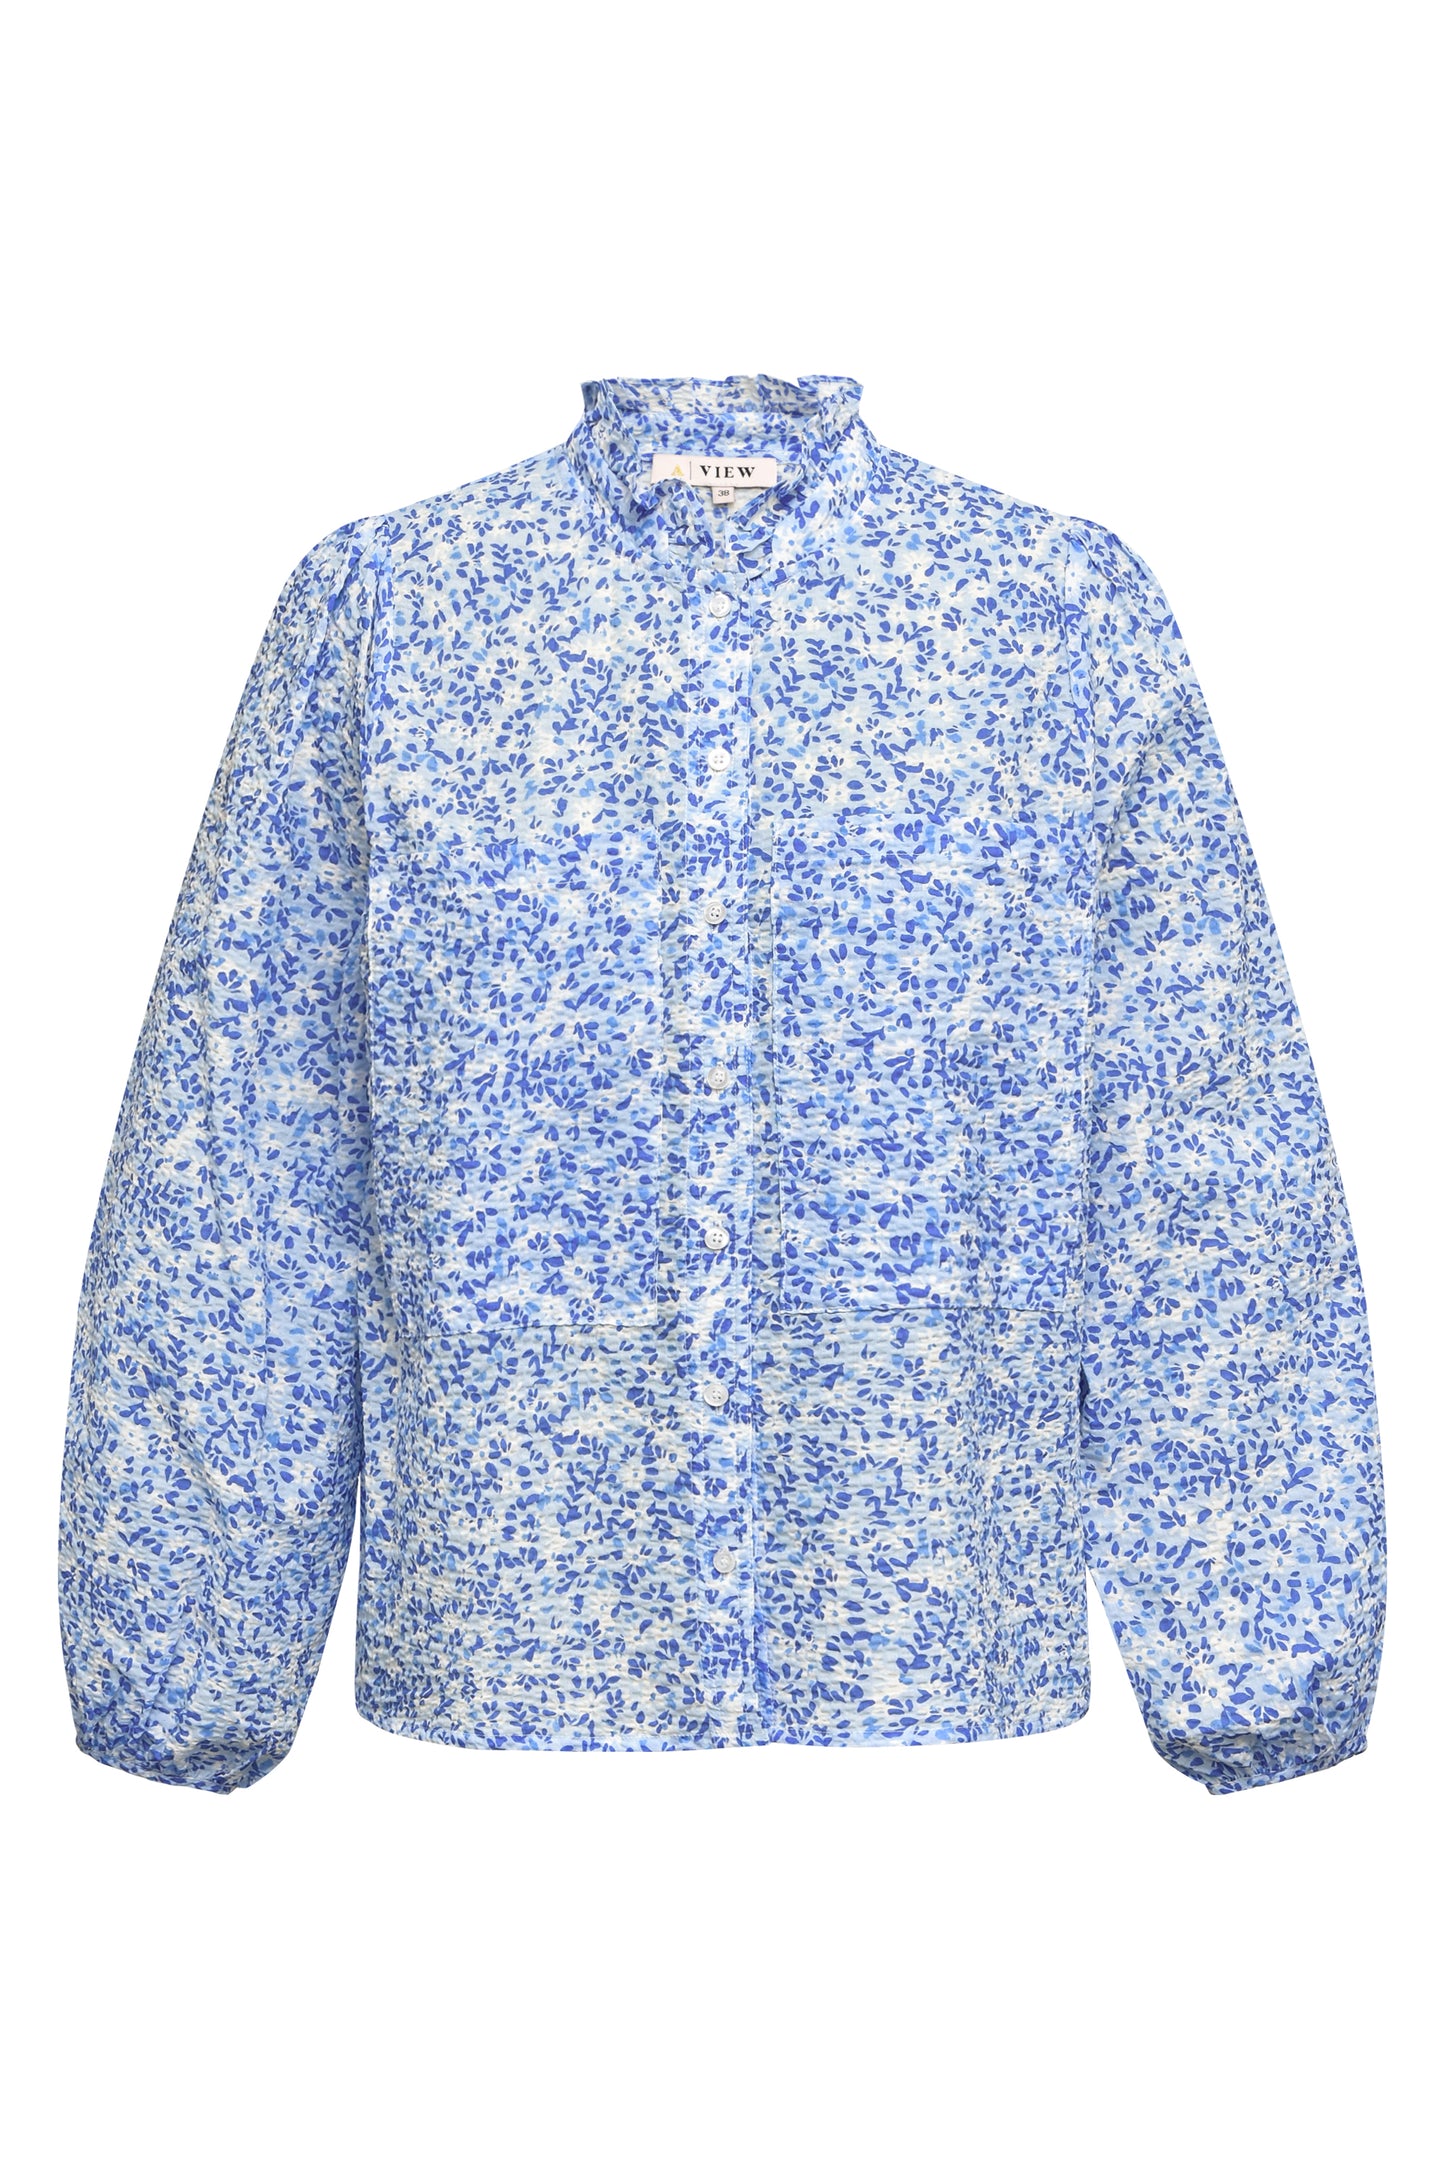 A-VIEW - Tiffany shirt - Blå